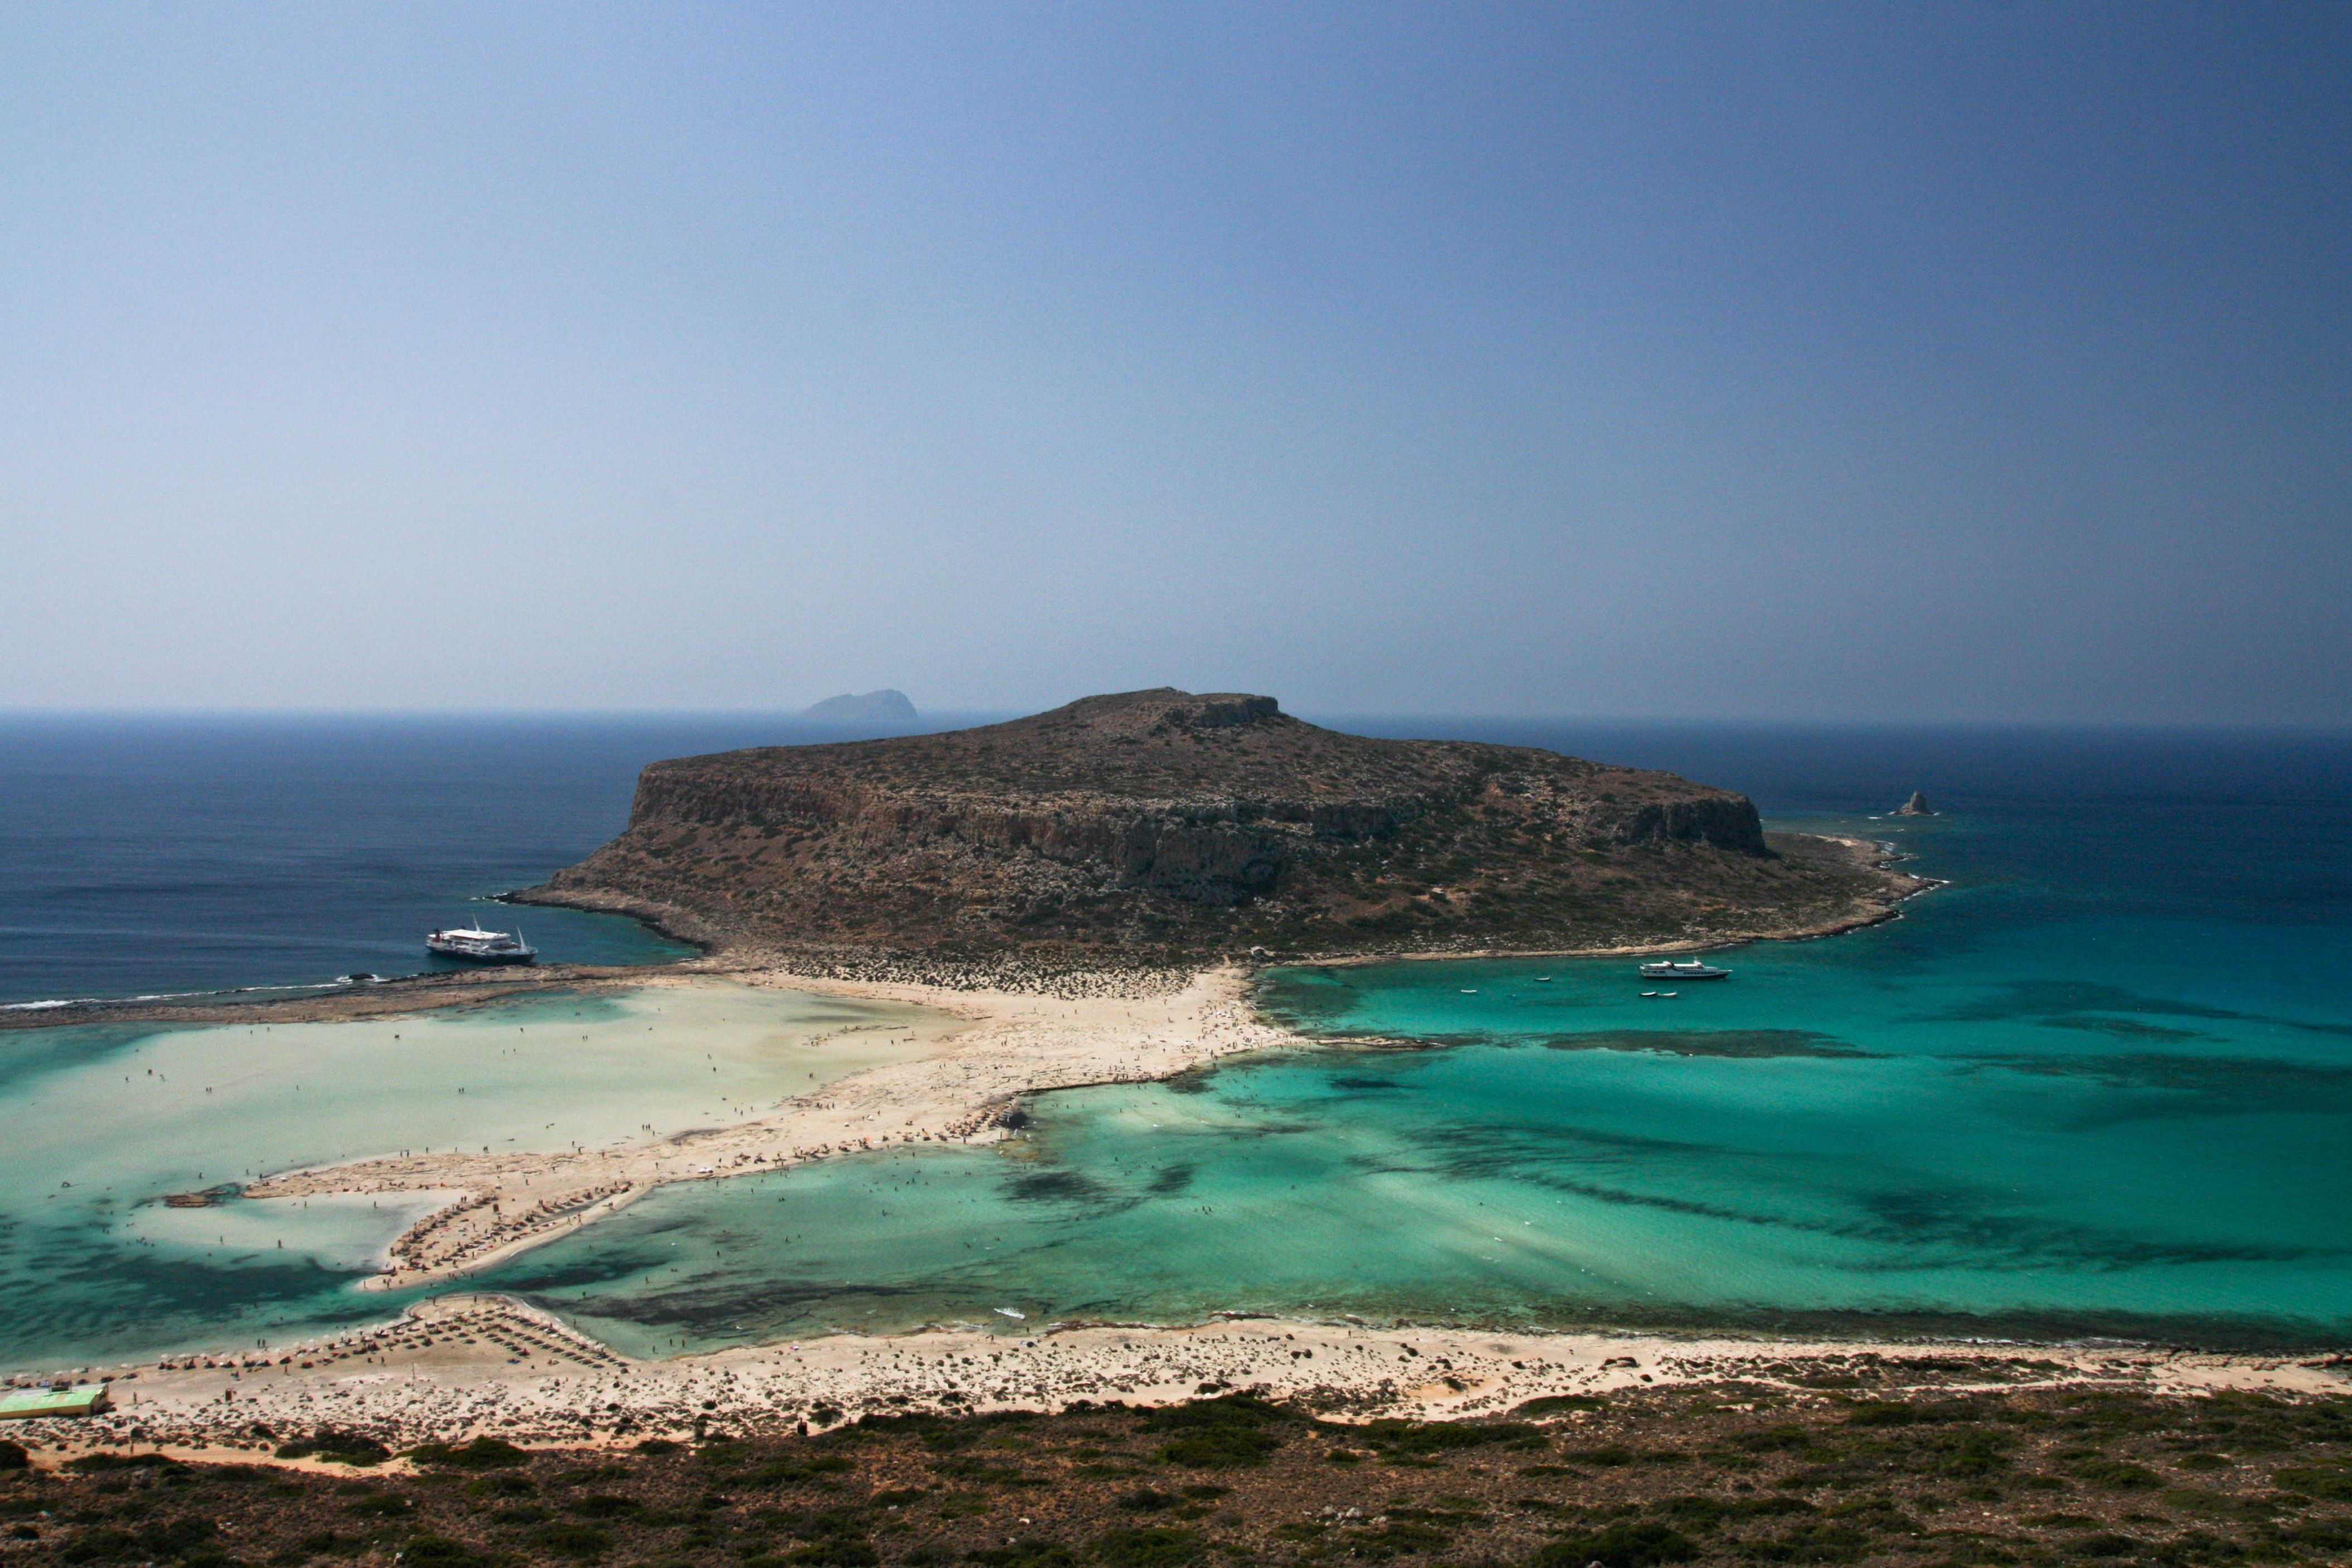 Cliff island in Crete, Greece